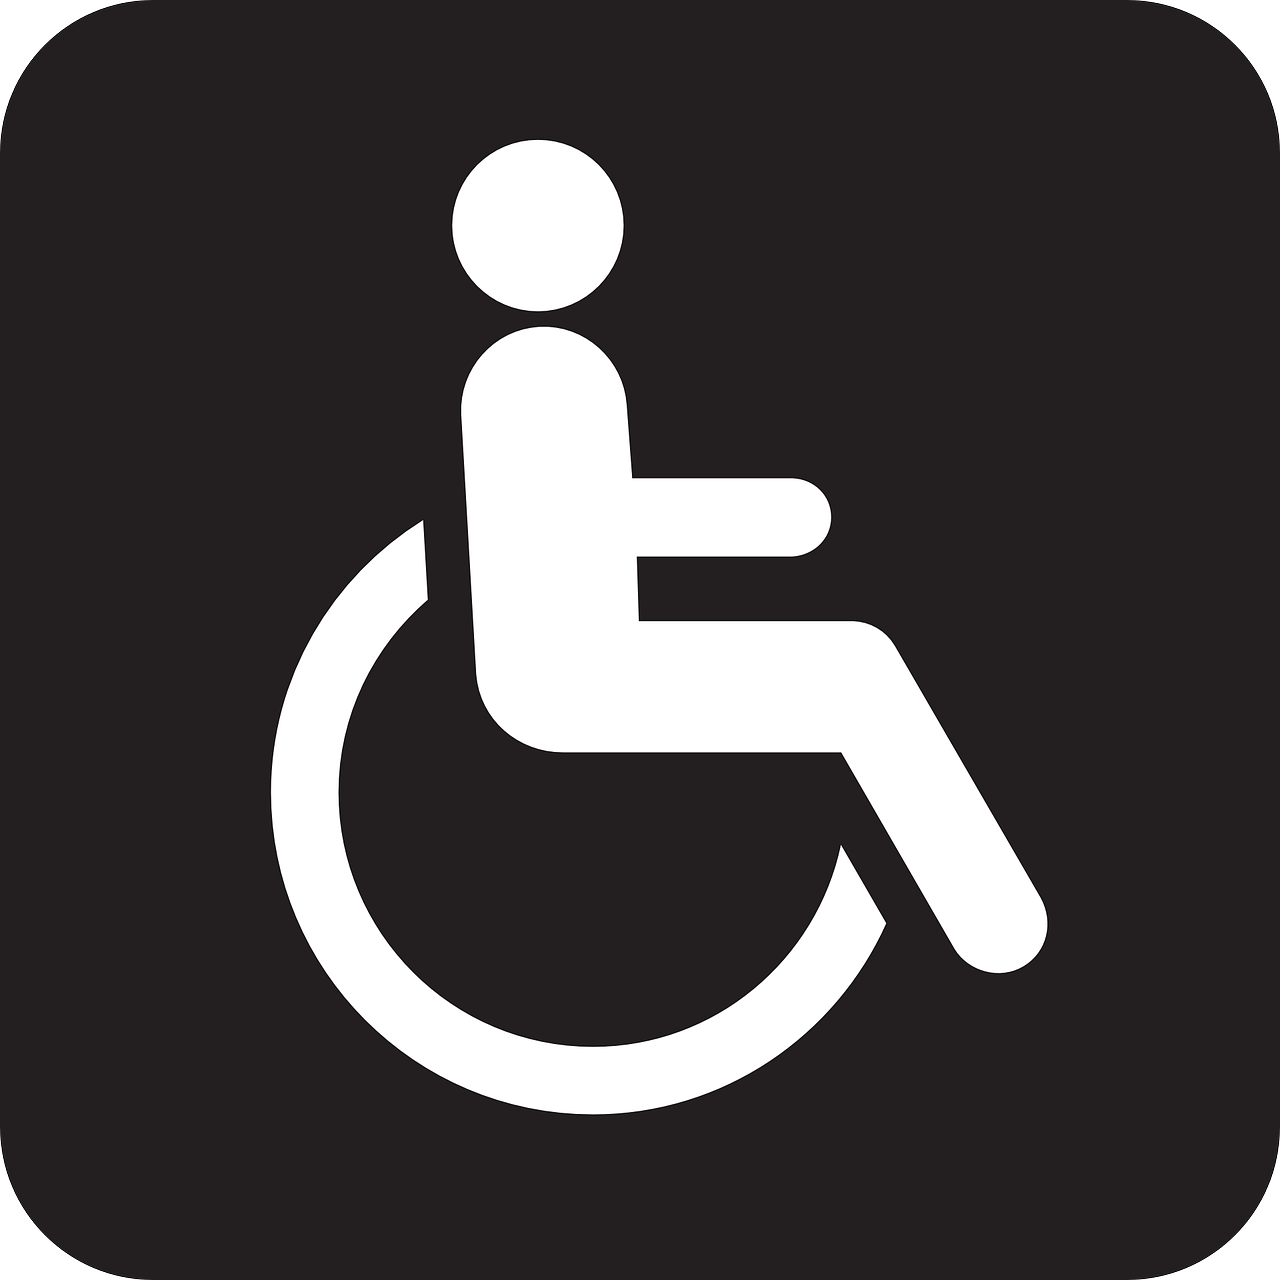 Vlietlande Woonlocatie Gemiva-SVG Groep beoordelingen instelling gehandicaptenzorg verstandelijk gehandicapten